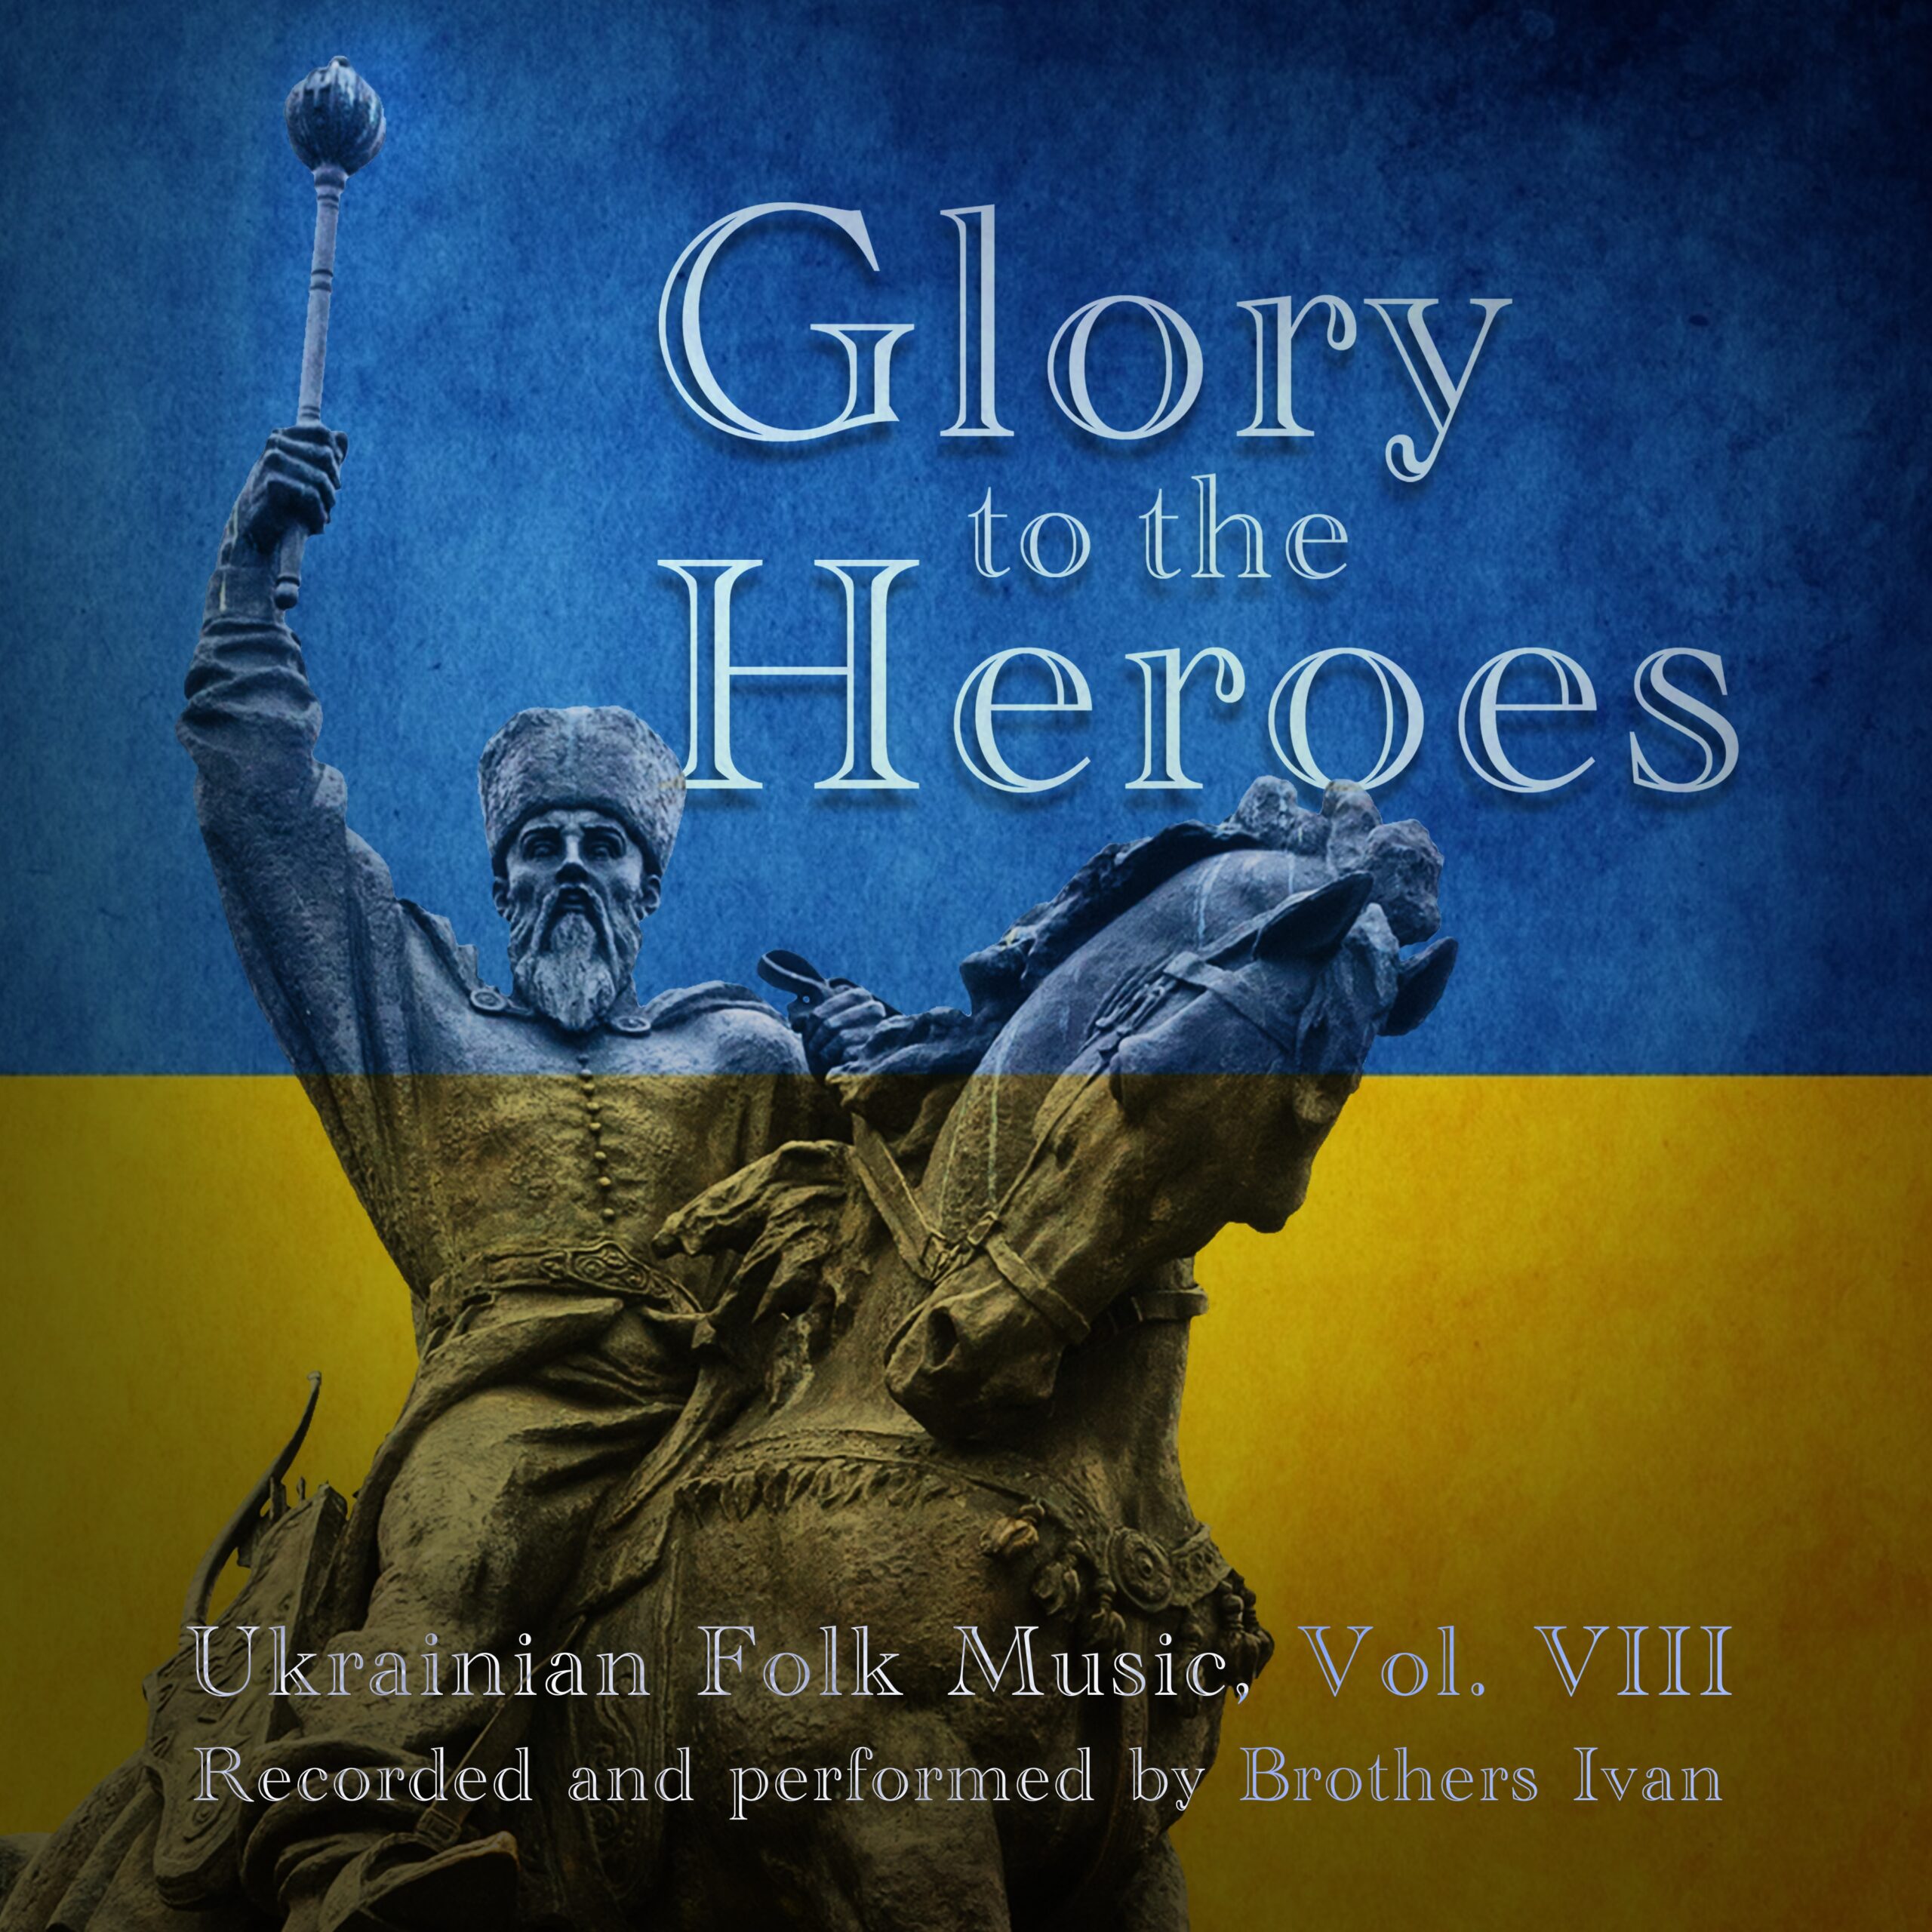 Brothers Ivan Unleash Patriotism in “Ukrainian Folk Music, Vol. VIII: Glory to the Heroes”